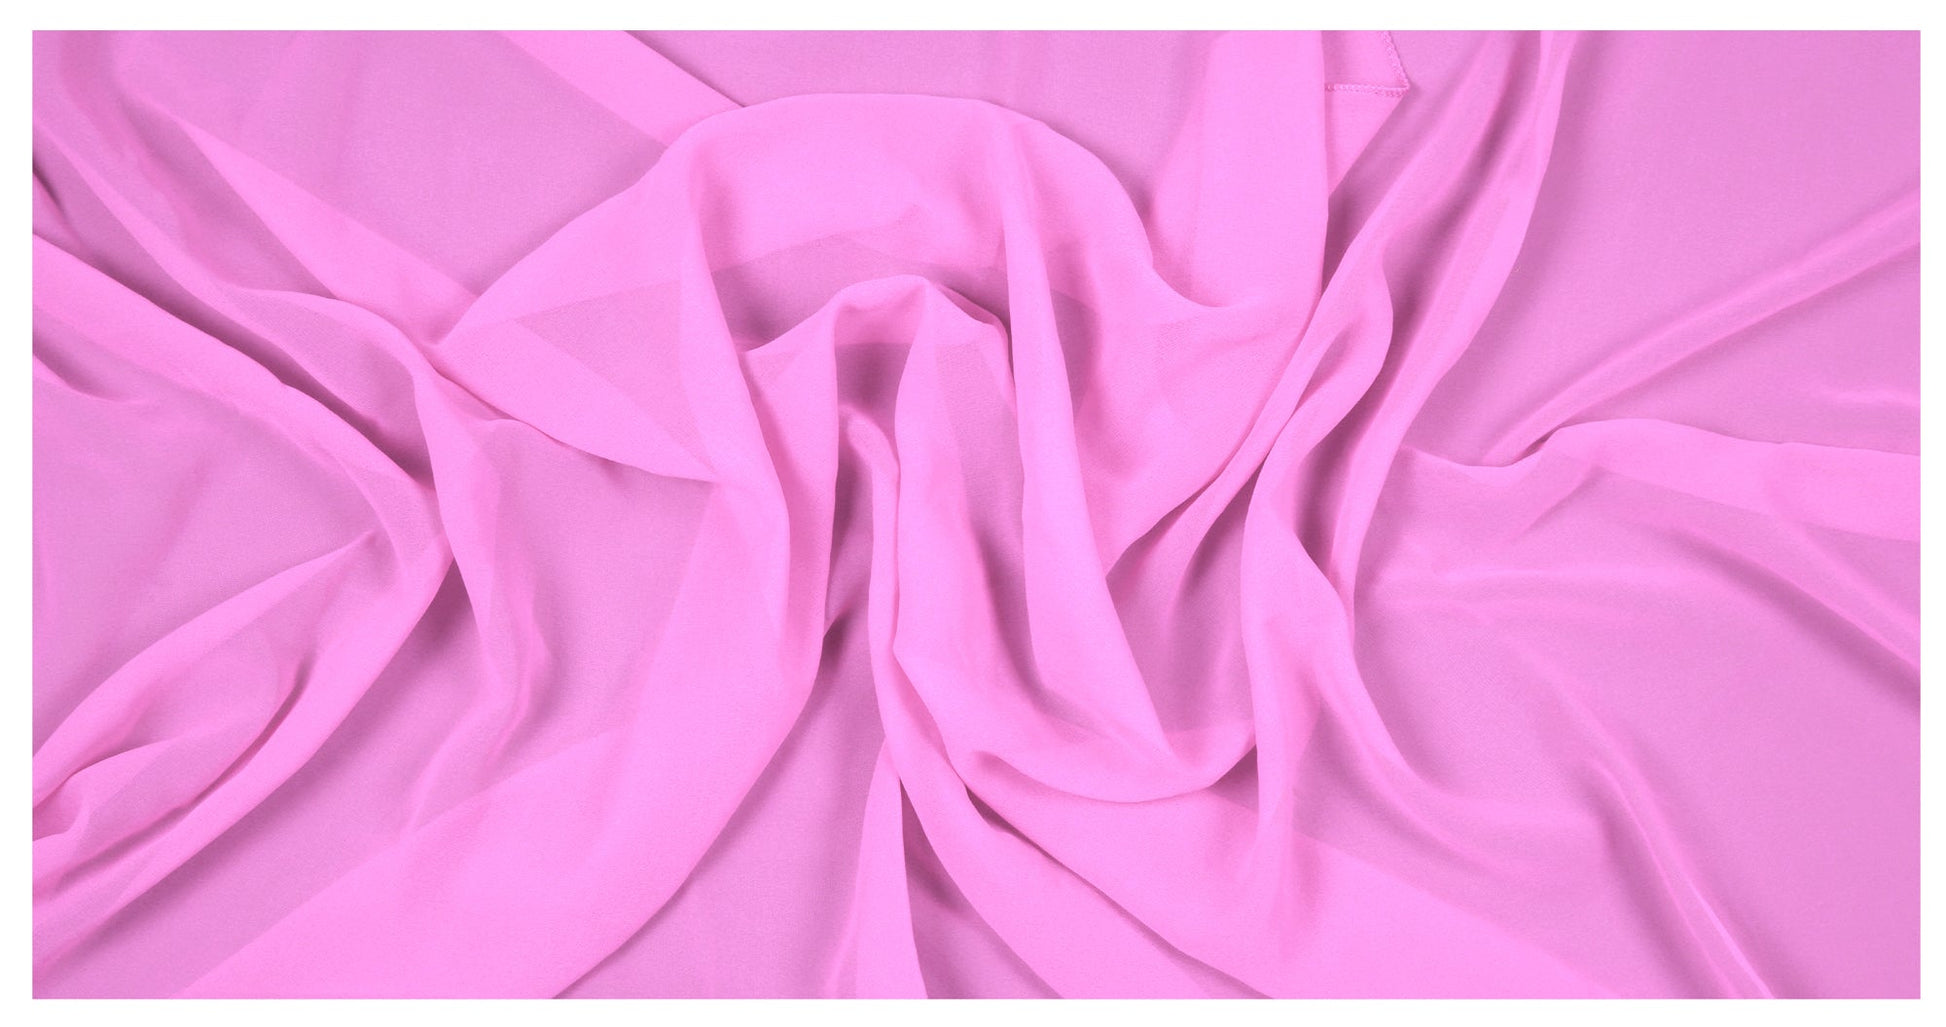 Bubblegum Pink,5516d816-17d7-47fa-a9f0-c051859fc474